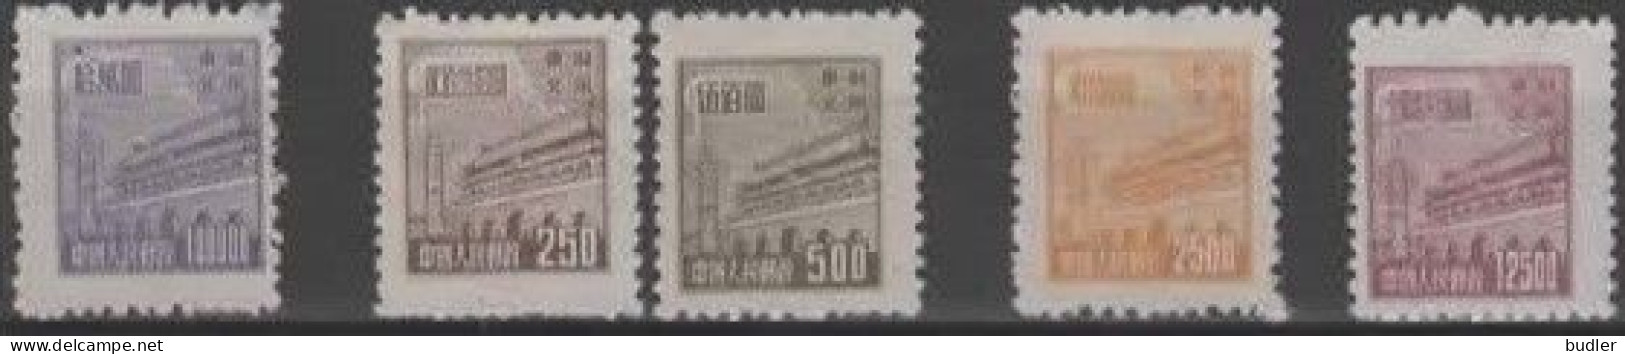 Noord-Oost CHINA [13] :1950: Y.165-67,169,171* :  100.000 / 250 / 500 / 2.500 12.500 $ : Porte De La Paix Céleste E - Cina Del Nord-Est 1946-48